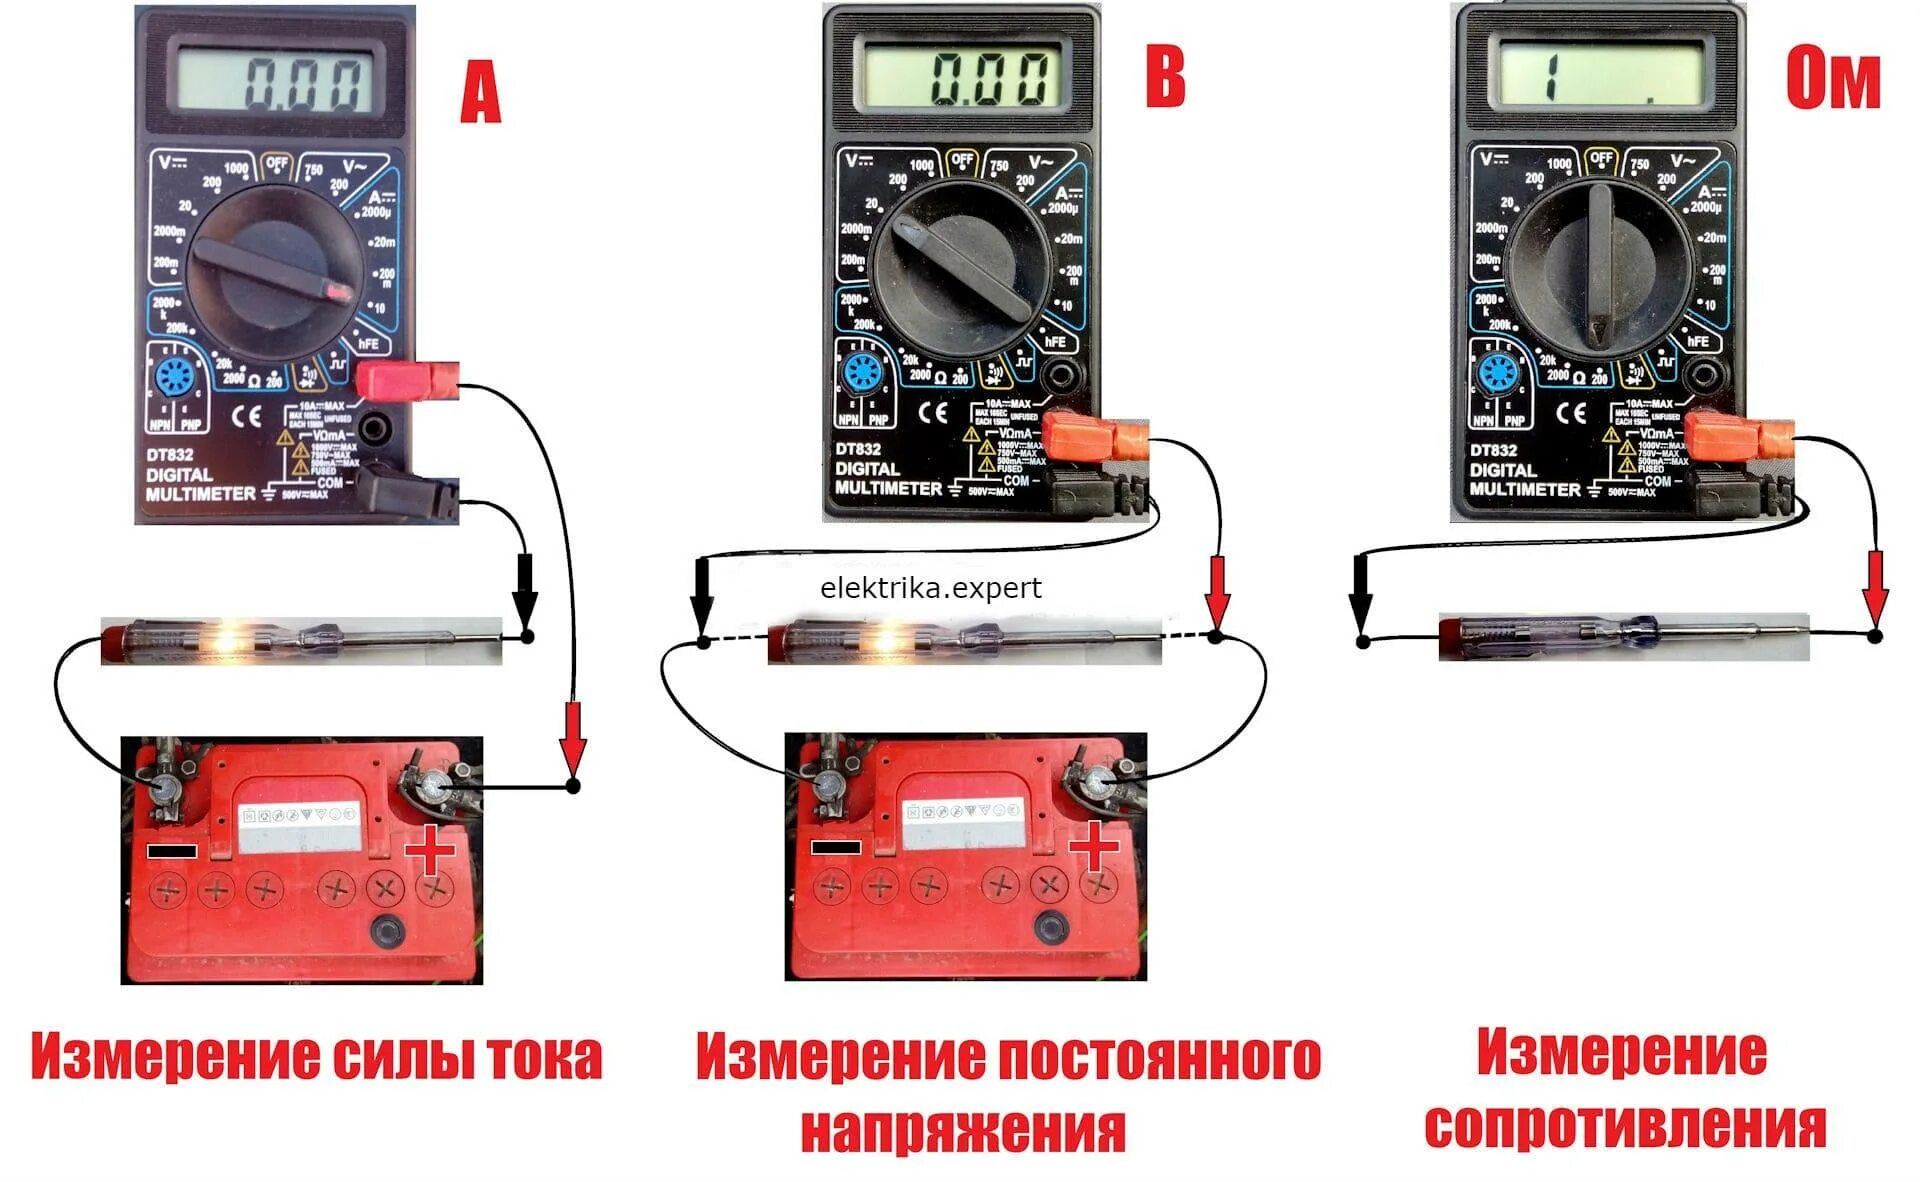 Схемы подключения мультиметра для измерения напряжения и силы тока. Схема измерения тока мультиметром. Мультиметр DT 832 замер напряжения. Как пользоваться мультиметром для измерения силы тока.